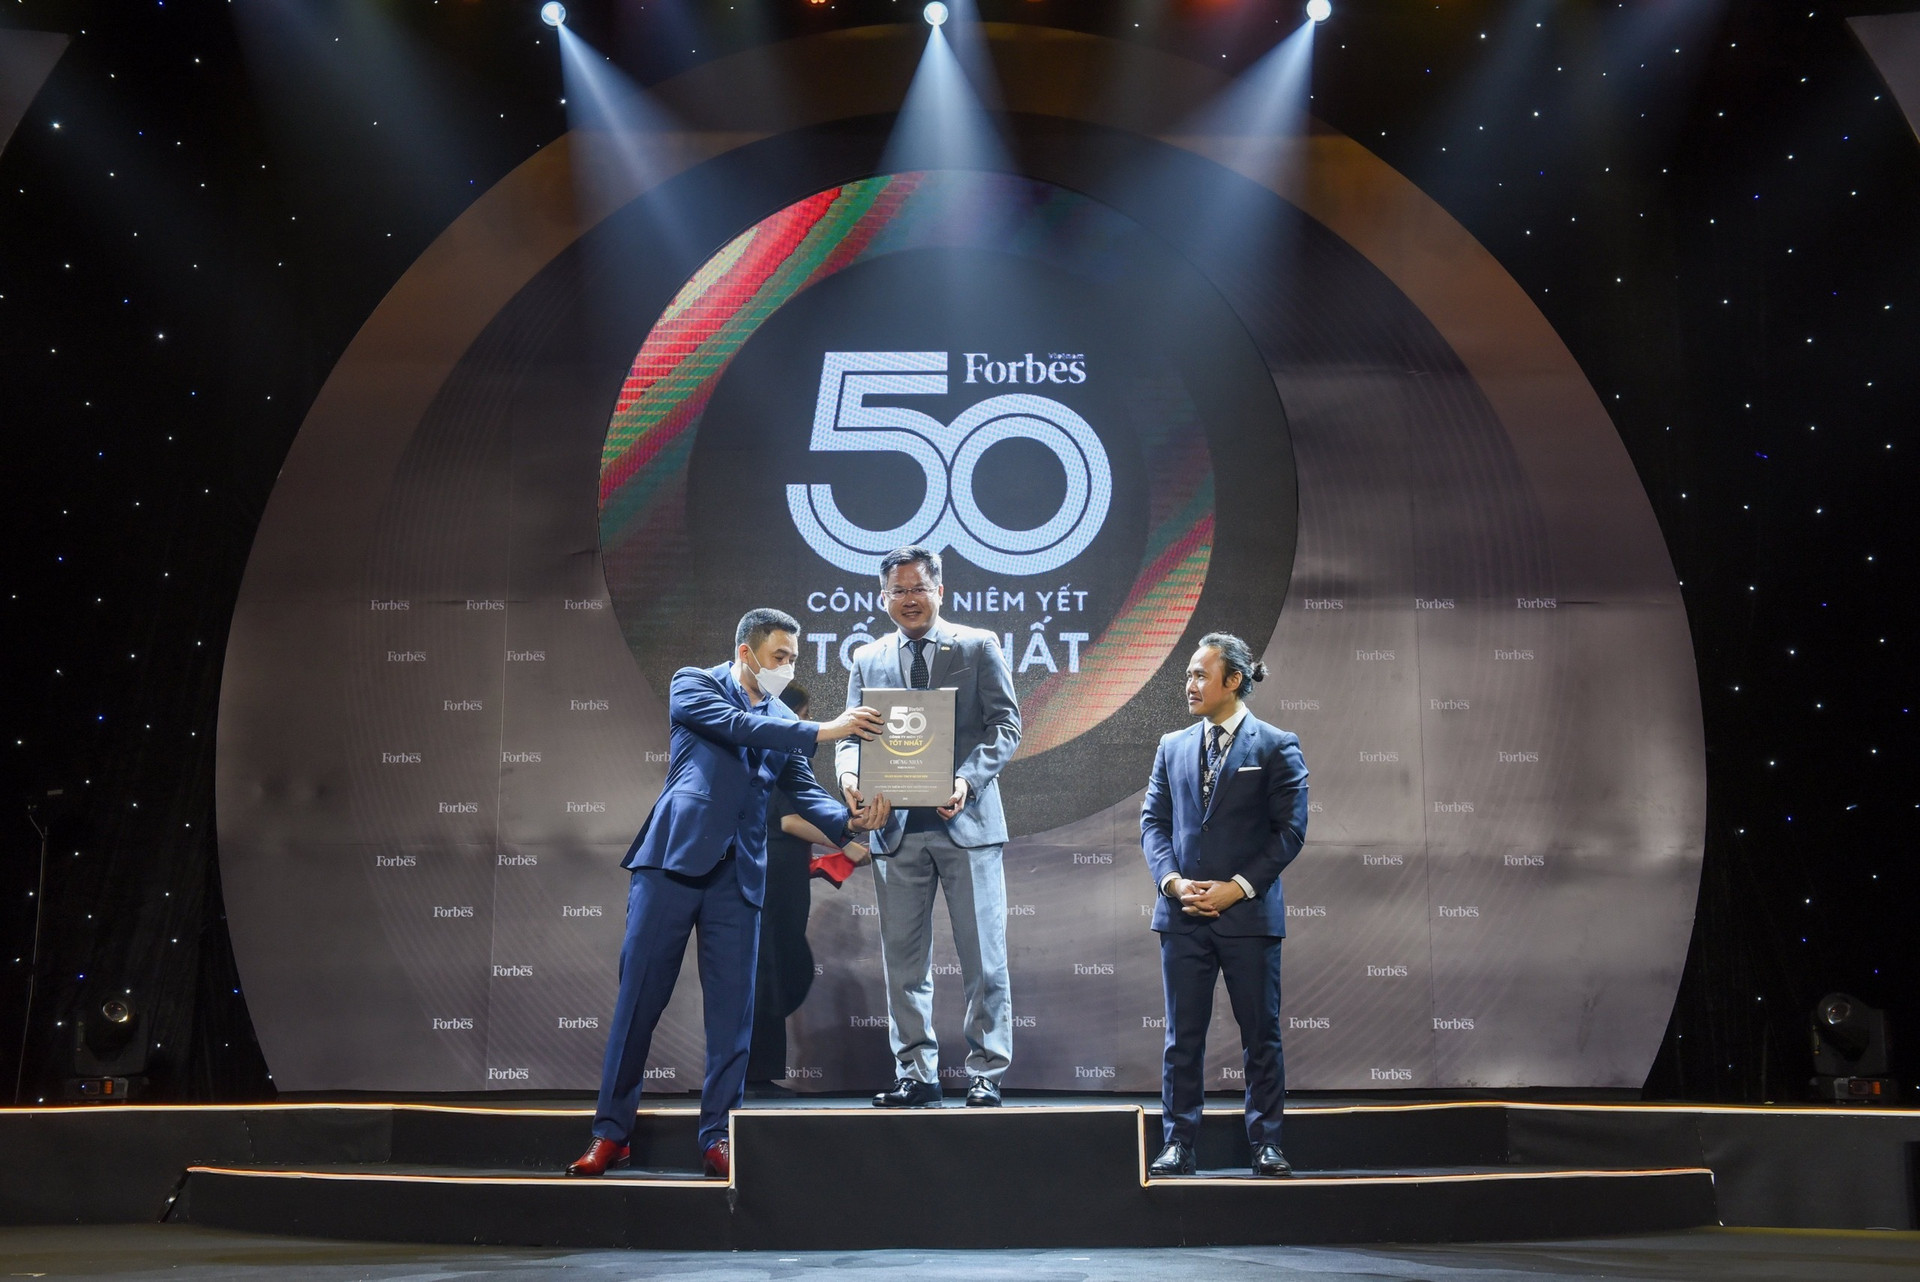 MB vào Top 50 công ty niêm yết tốt nhất Việt Nam 2021 của Forbes - 1